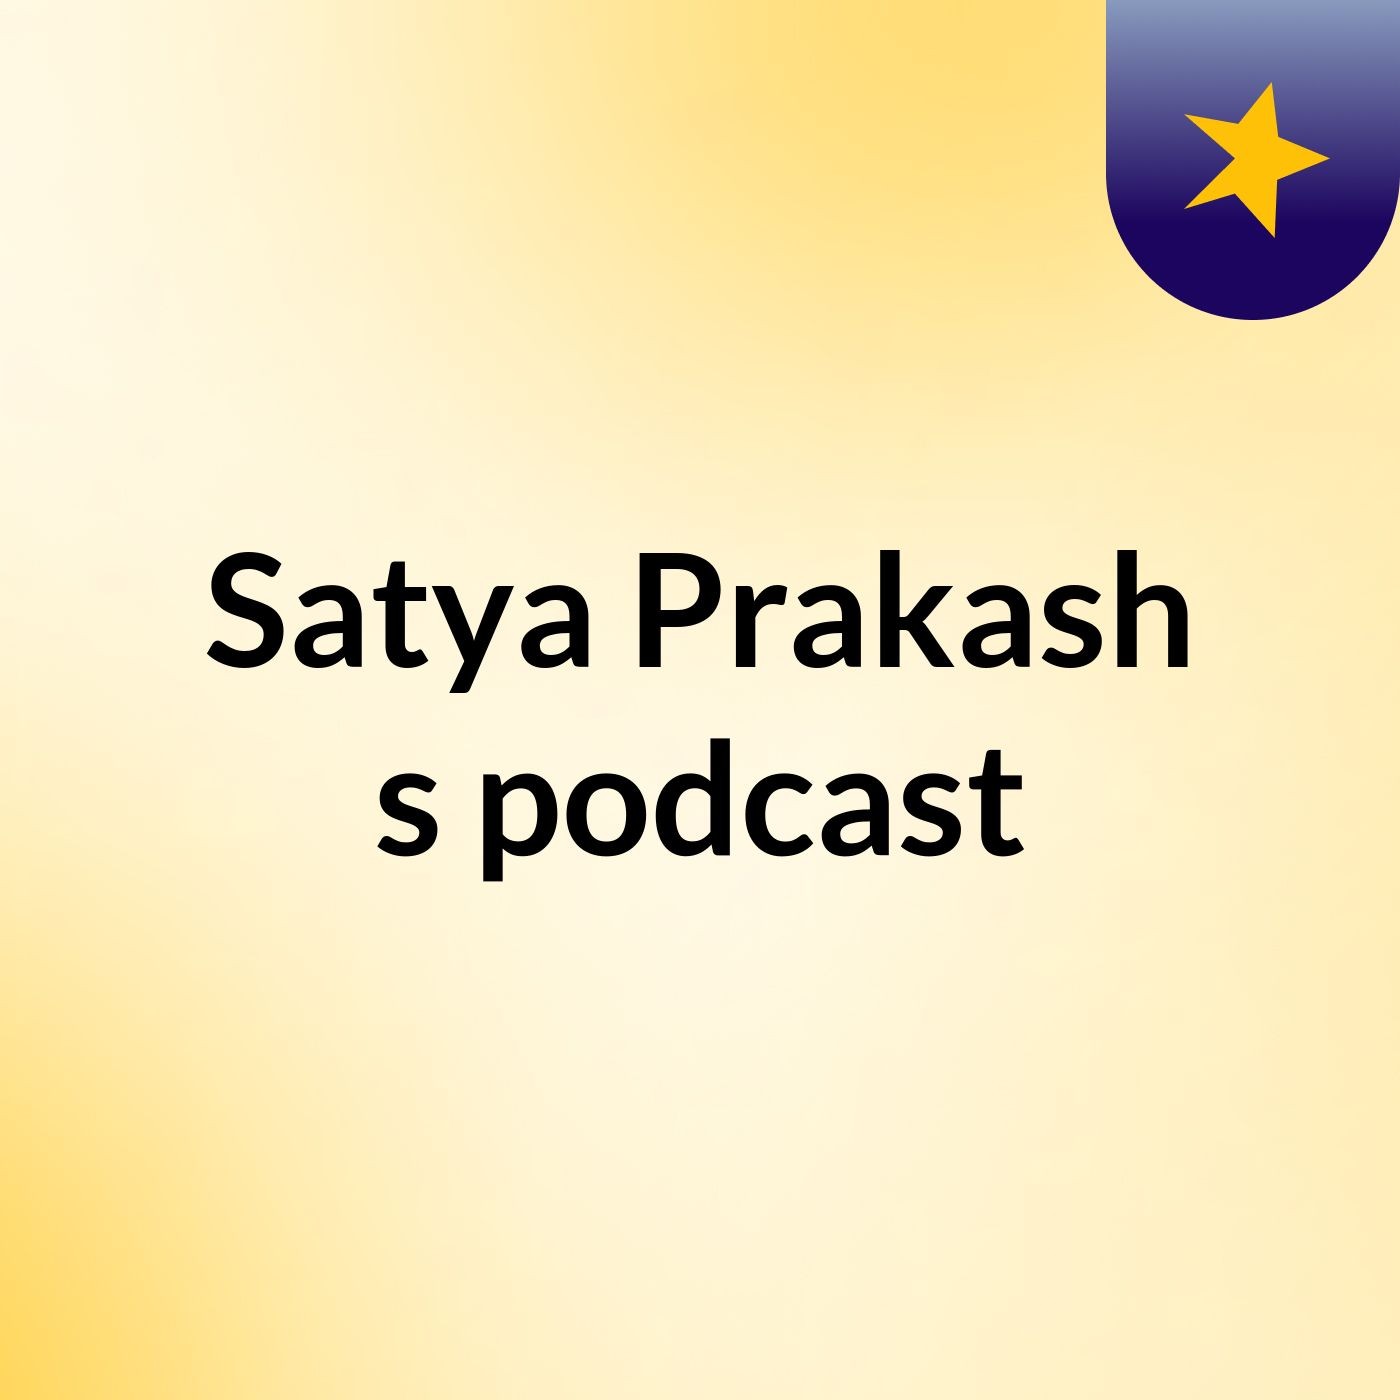 Episode 2 - Satya Prakash's podcast